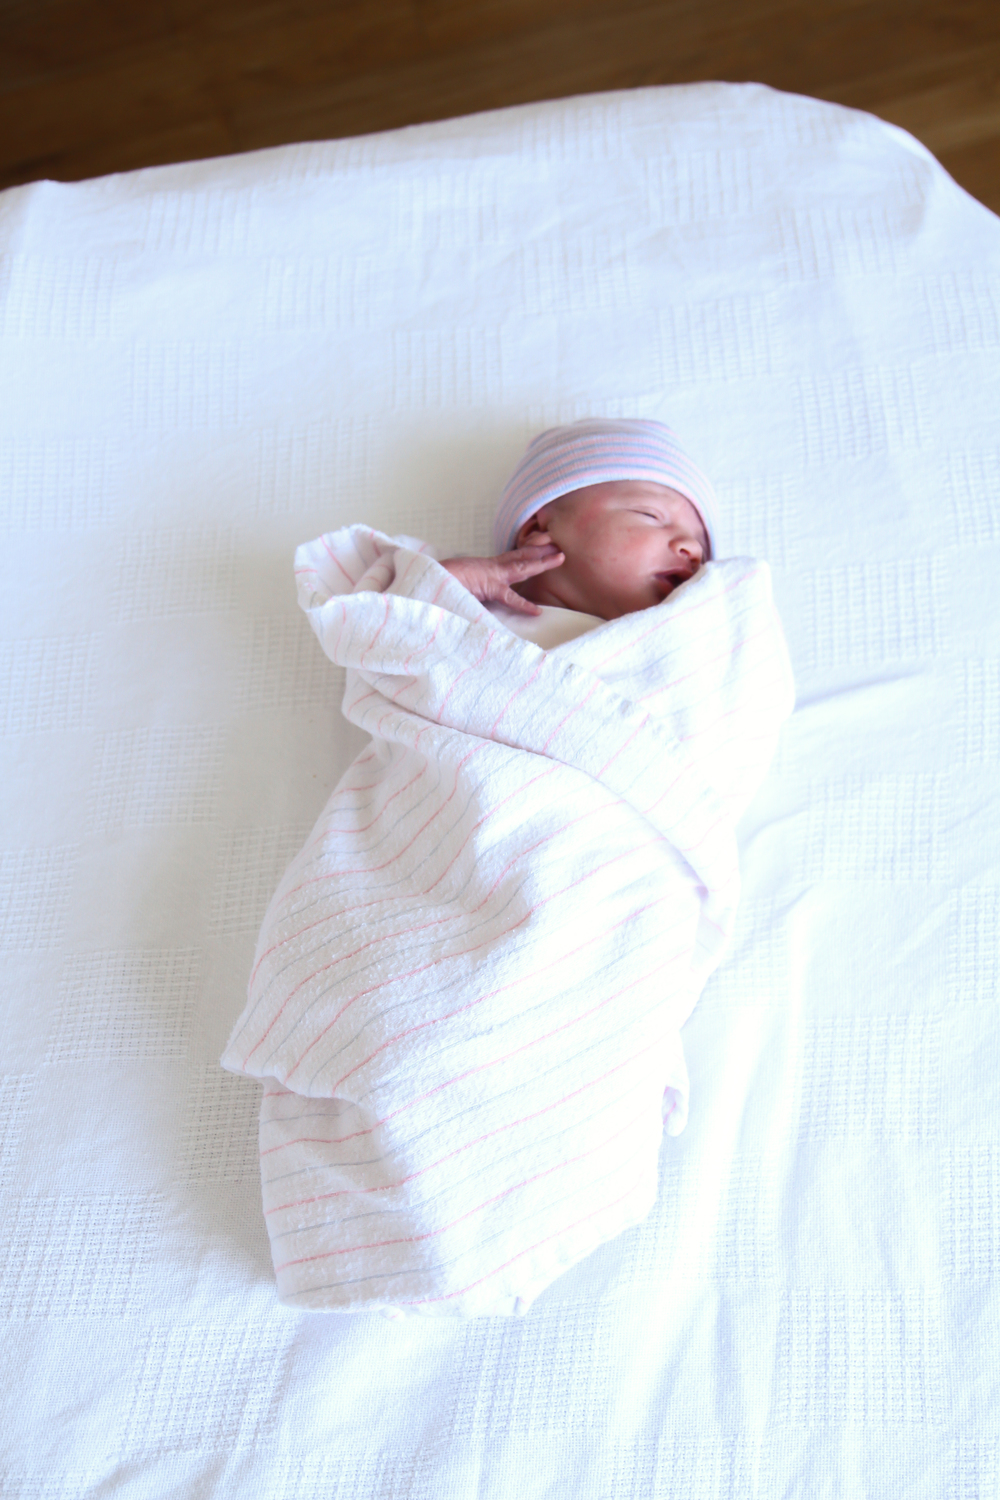 Newborn laying in crib